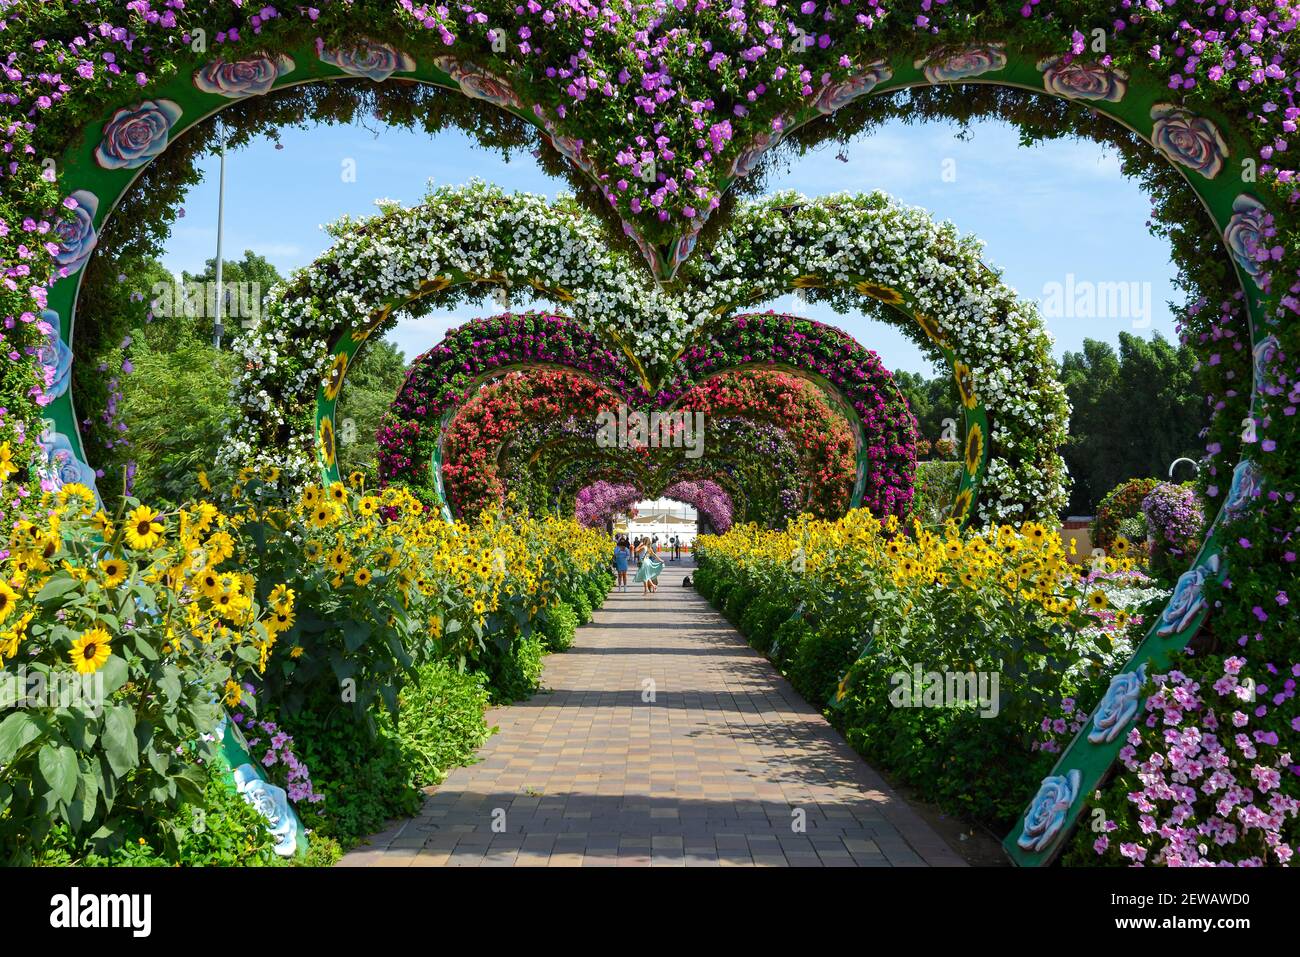 Flower Hearts Passage im Dubai Miracle Garden, einer Blumenpassage in Dubai, Vereinigte Arabische Emirate. Farbenfroher herzförmiger Blumentunnel. Stockfoto